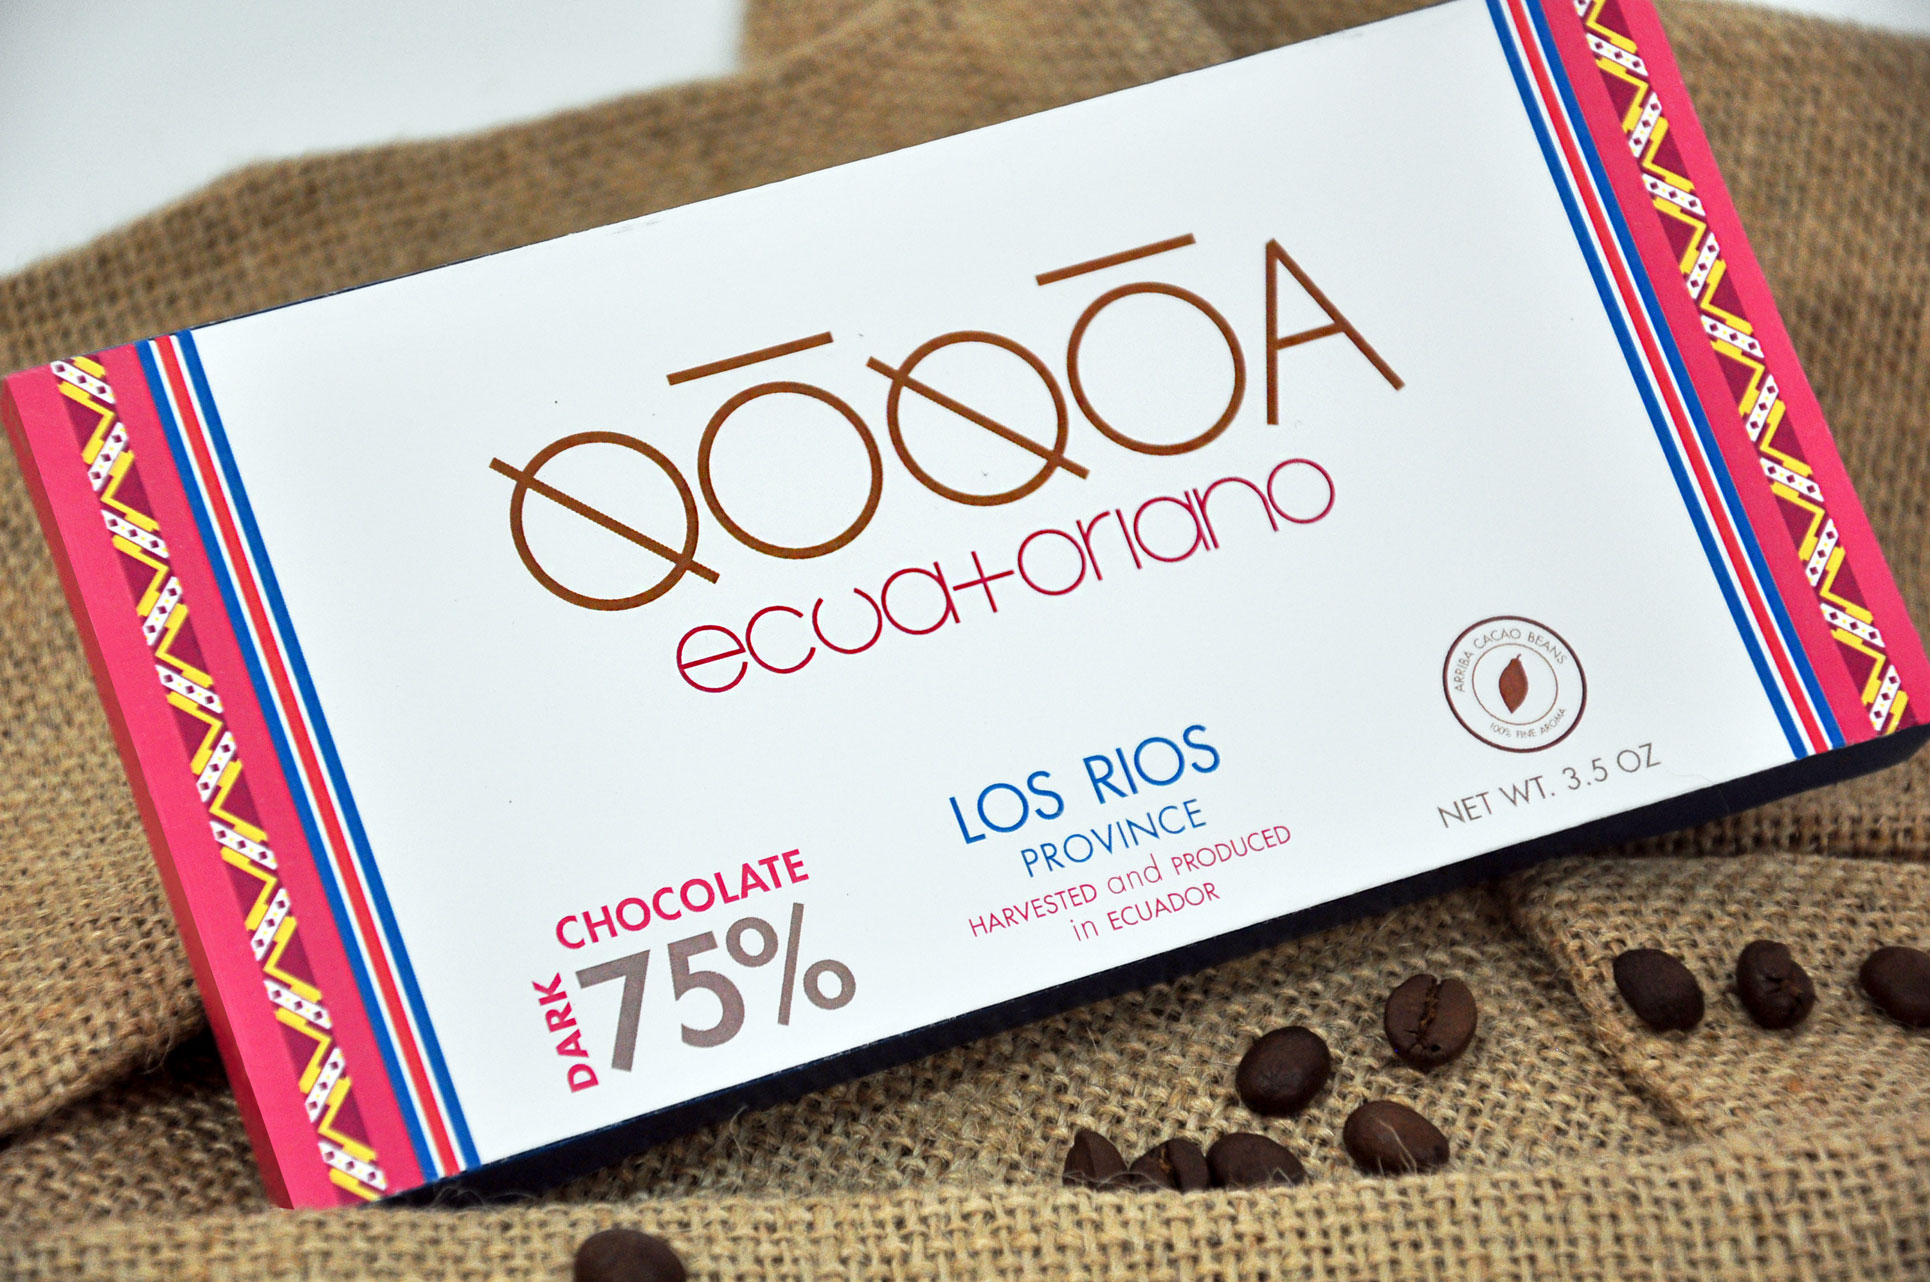 QOQOA Chocolate Ecuatoriano Los Rios Flavor